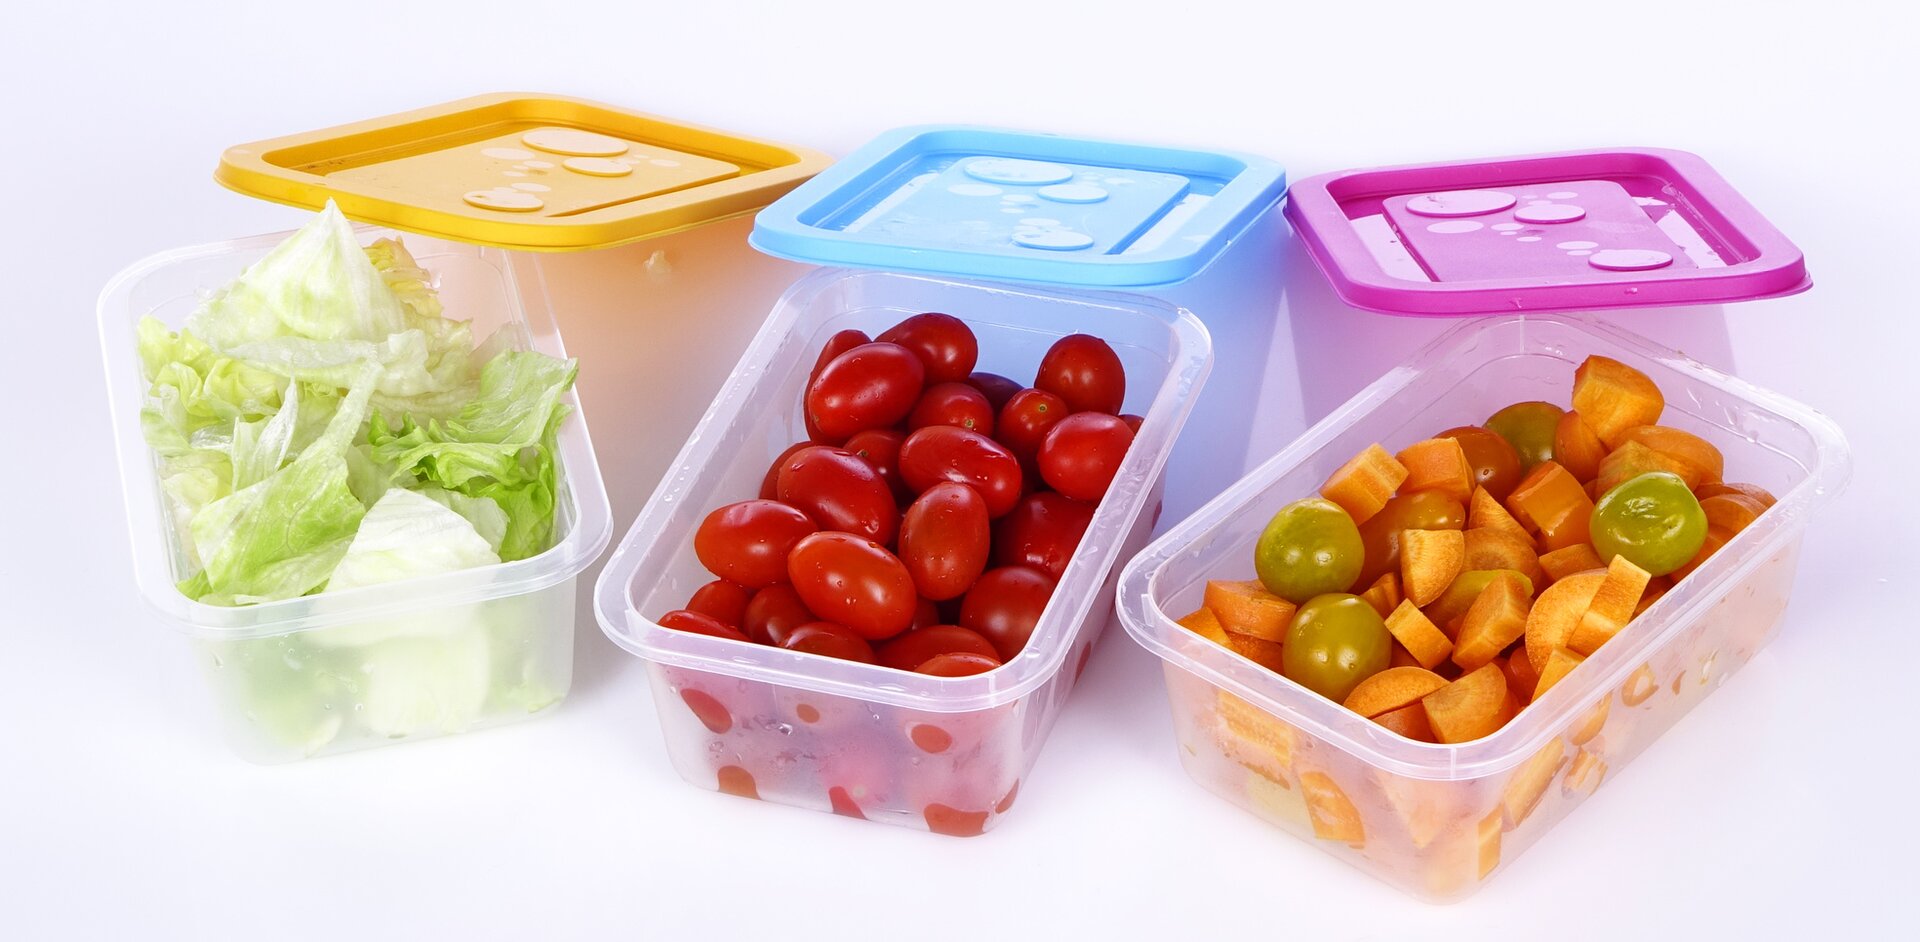 Fotografia przedstawia pokrojone surowe warzywa (sałatę, pomidory i marchew) umieszczone w plastikowych pojemnikach na żywność. Pojemniki mają prostokątny kształt i są otwarte. Kolorowe pokrywki (kolejno od lewej: żółta, niebieska i różowa) opierają się o krótszą krawędź pojemnika odsłaniając ich wnętrze. W pierwszym pojemniku od lewej strony znajduje się pokrojona sałata, w drugim czerwone pomidorki koktajlowe, a w trzecim pokrojona marchewka.